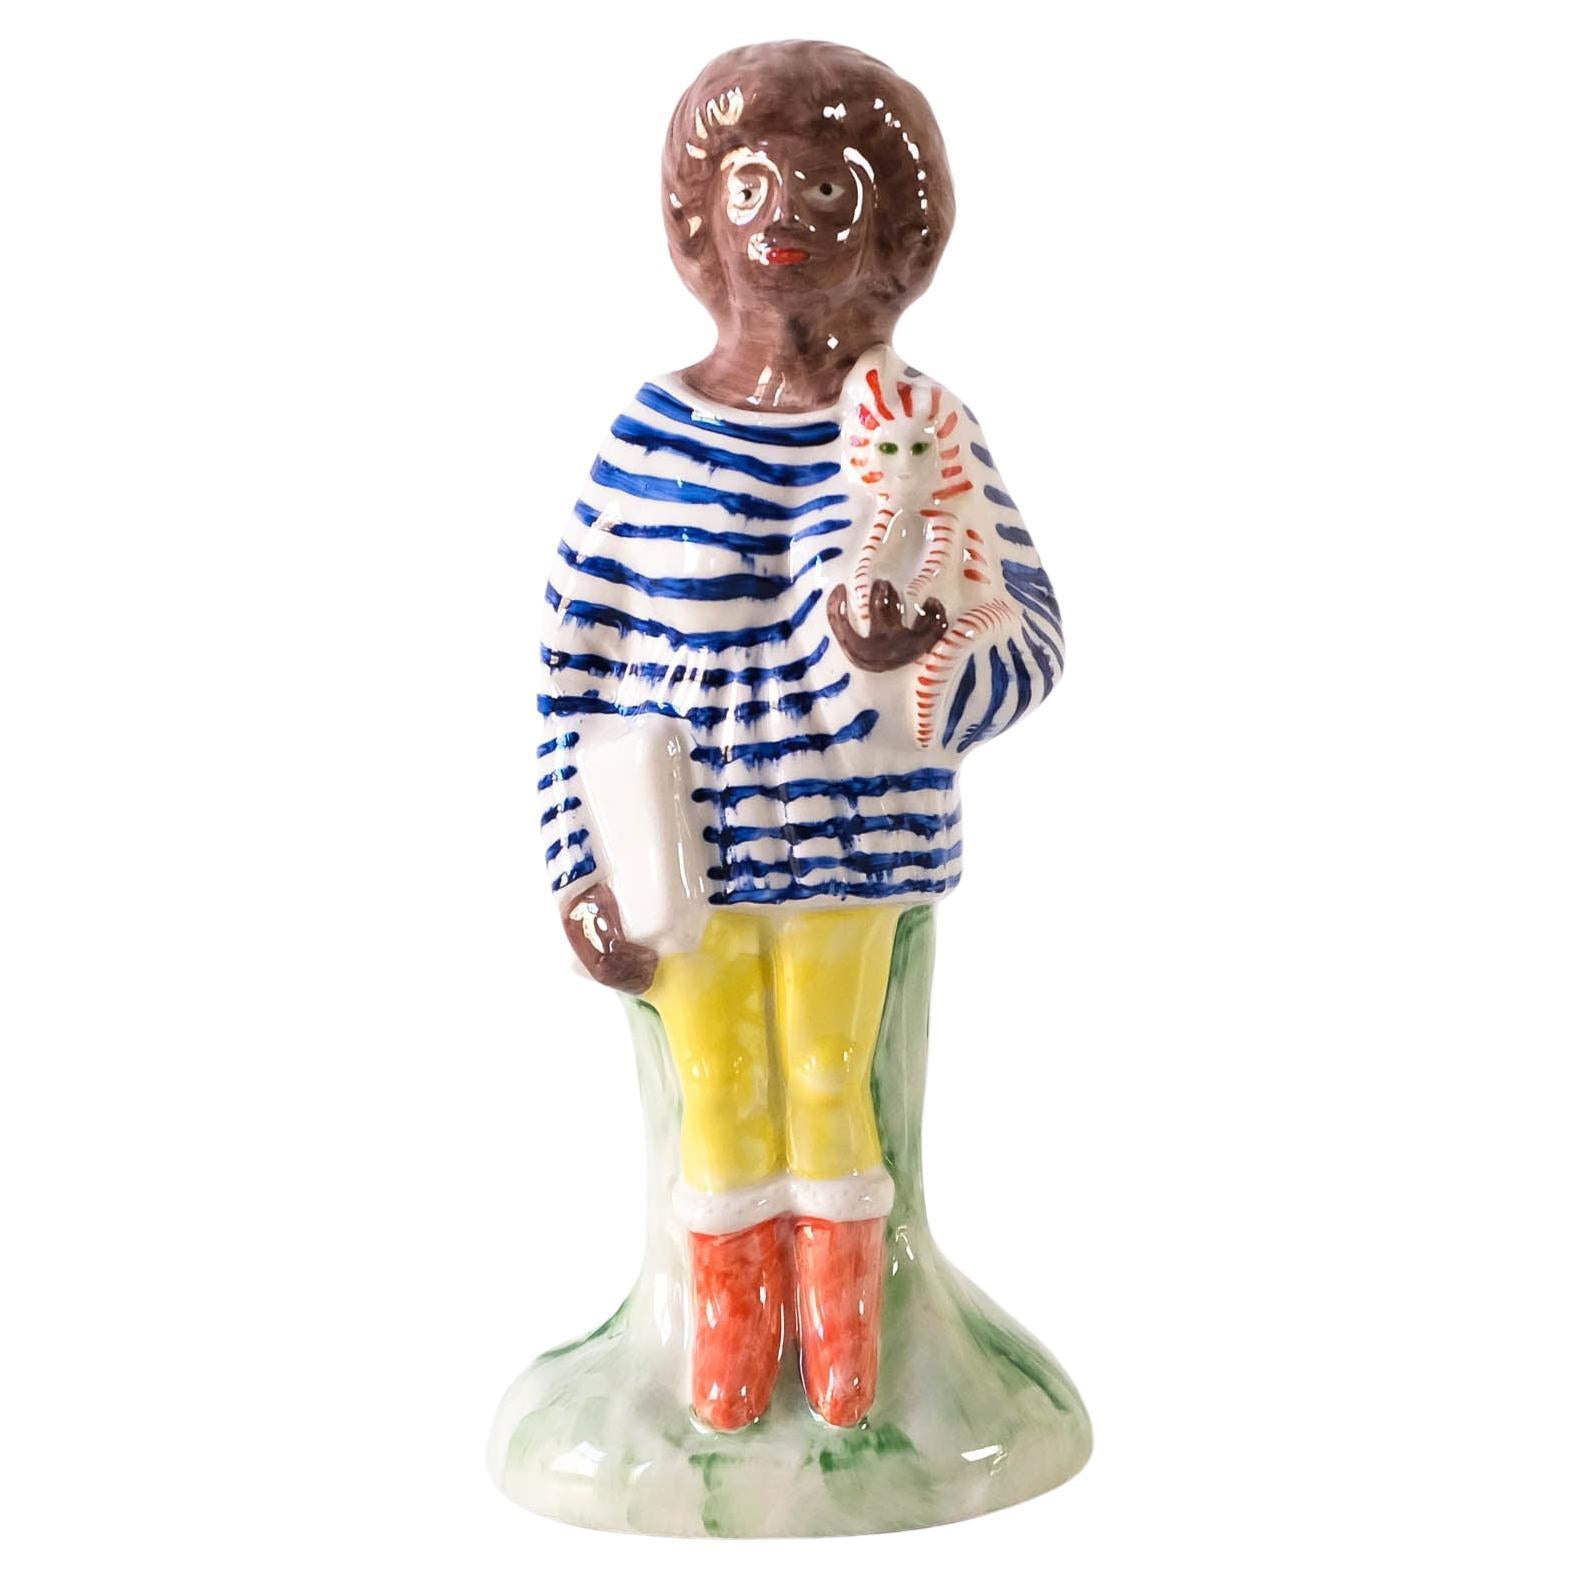 Une figure Staffordshire Home Worker en céramique émaillée peinte à la main par Grayson Perry, qui fait partie de sa série 